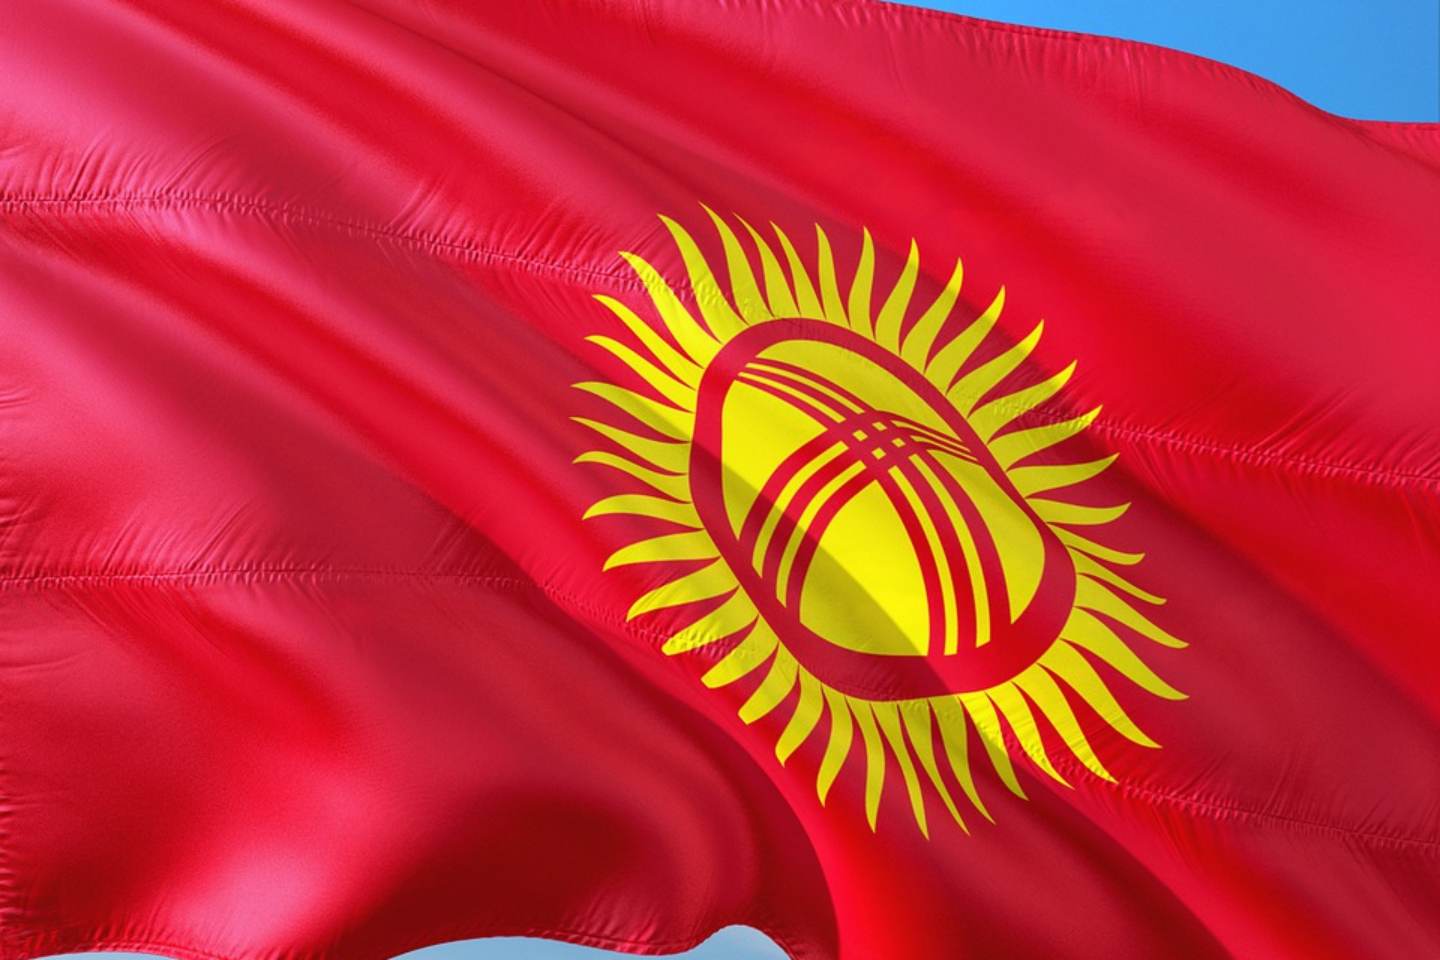 Новости мира / Политика в мире / Красный на голубой: депутат Кыргызстана захотел сменить цвет национального флага